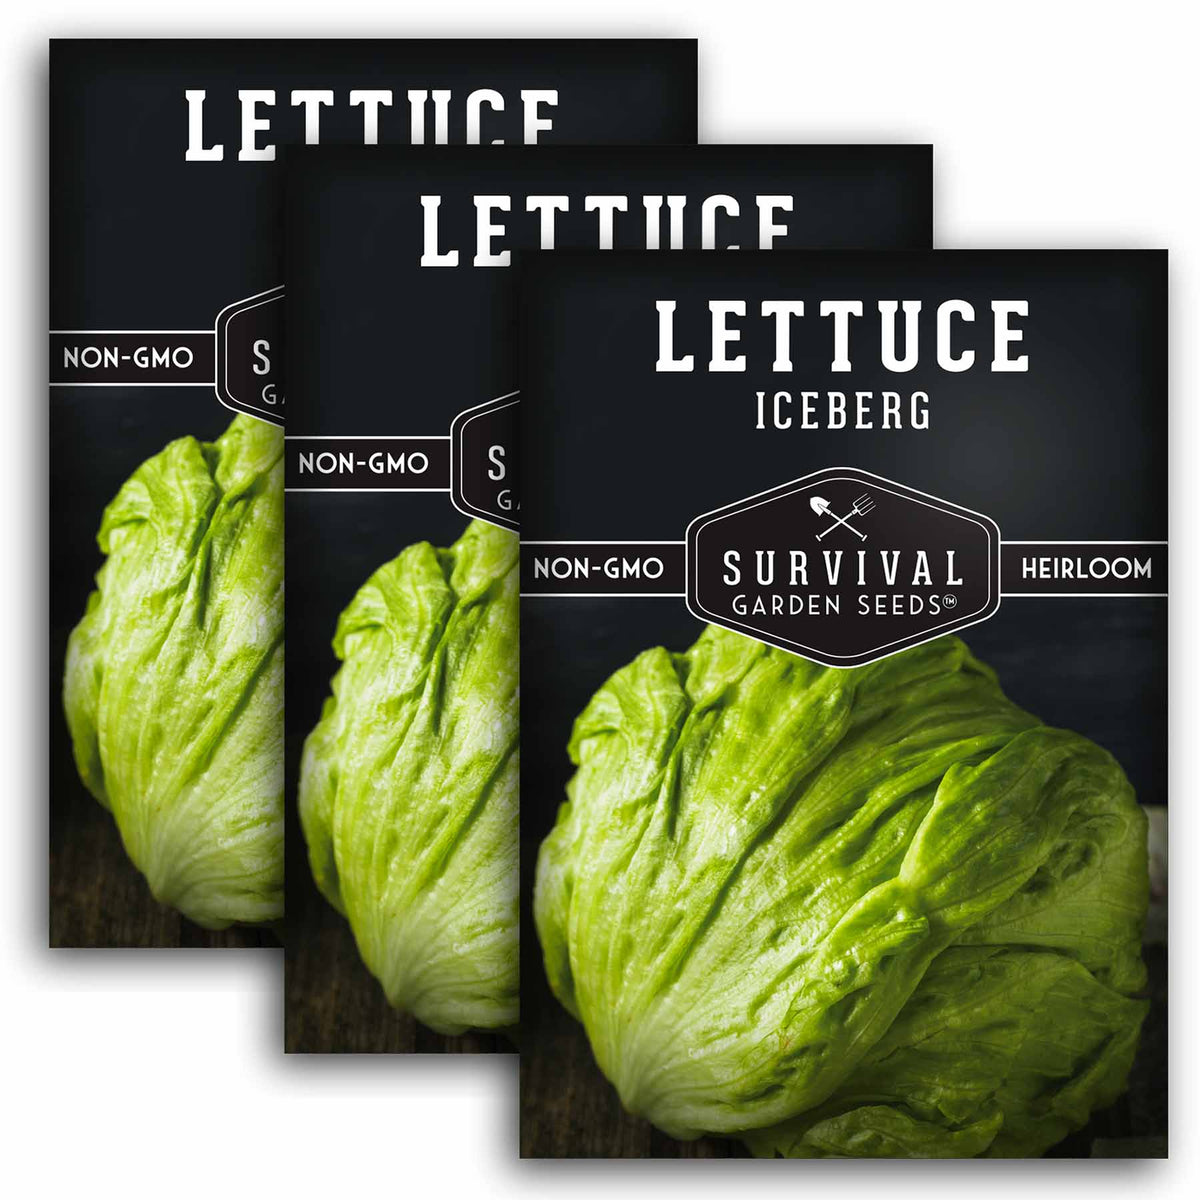 3 packets of Iceberg Lettuce seeds